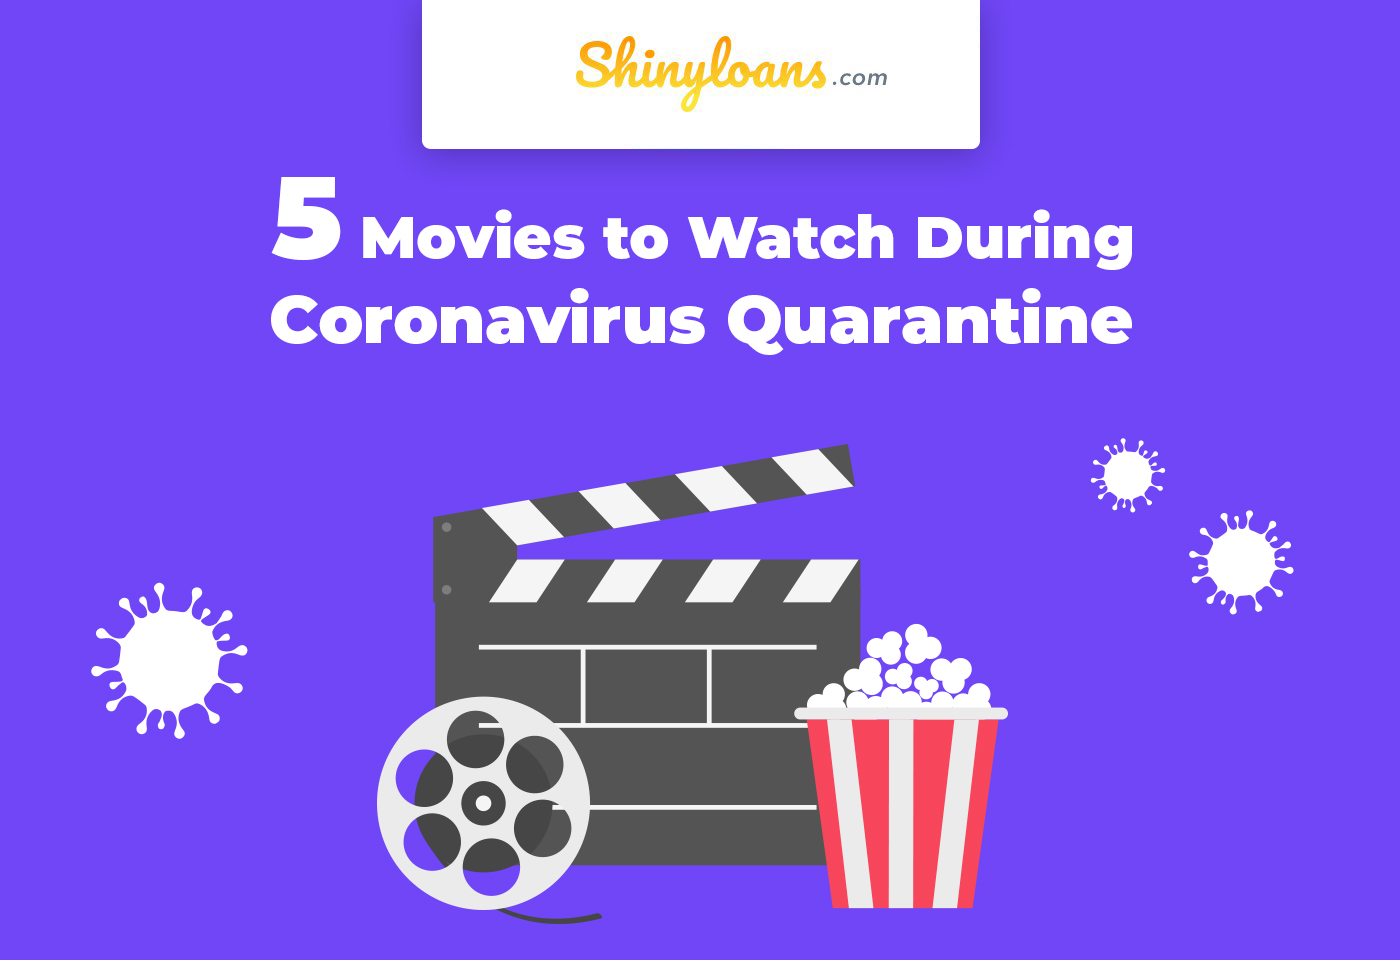 5 Movies to Watch During Coronavirus Quarantine